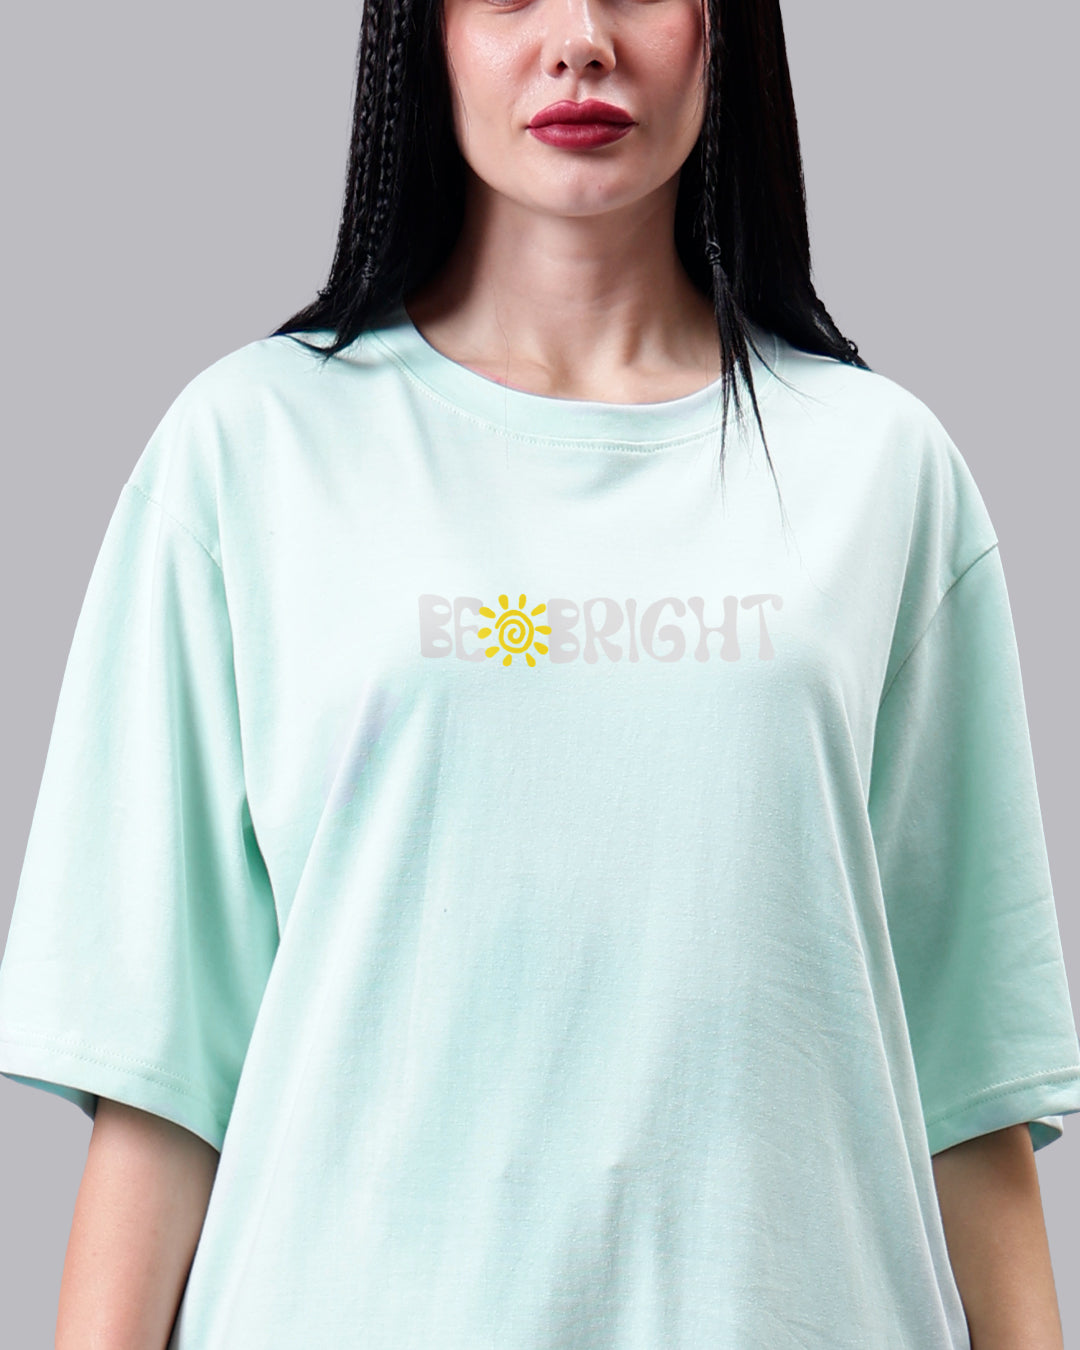 Be Bright Oversized Women Tshirt